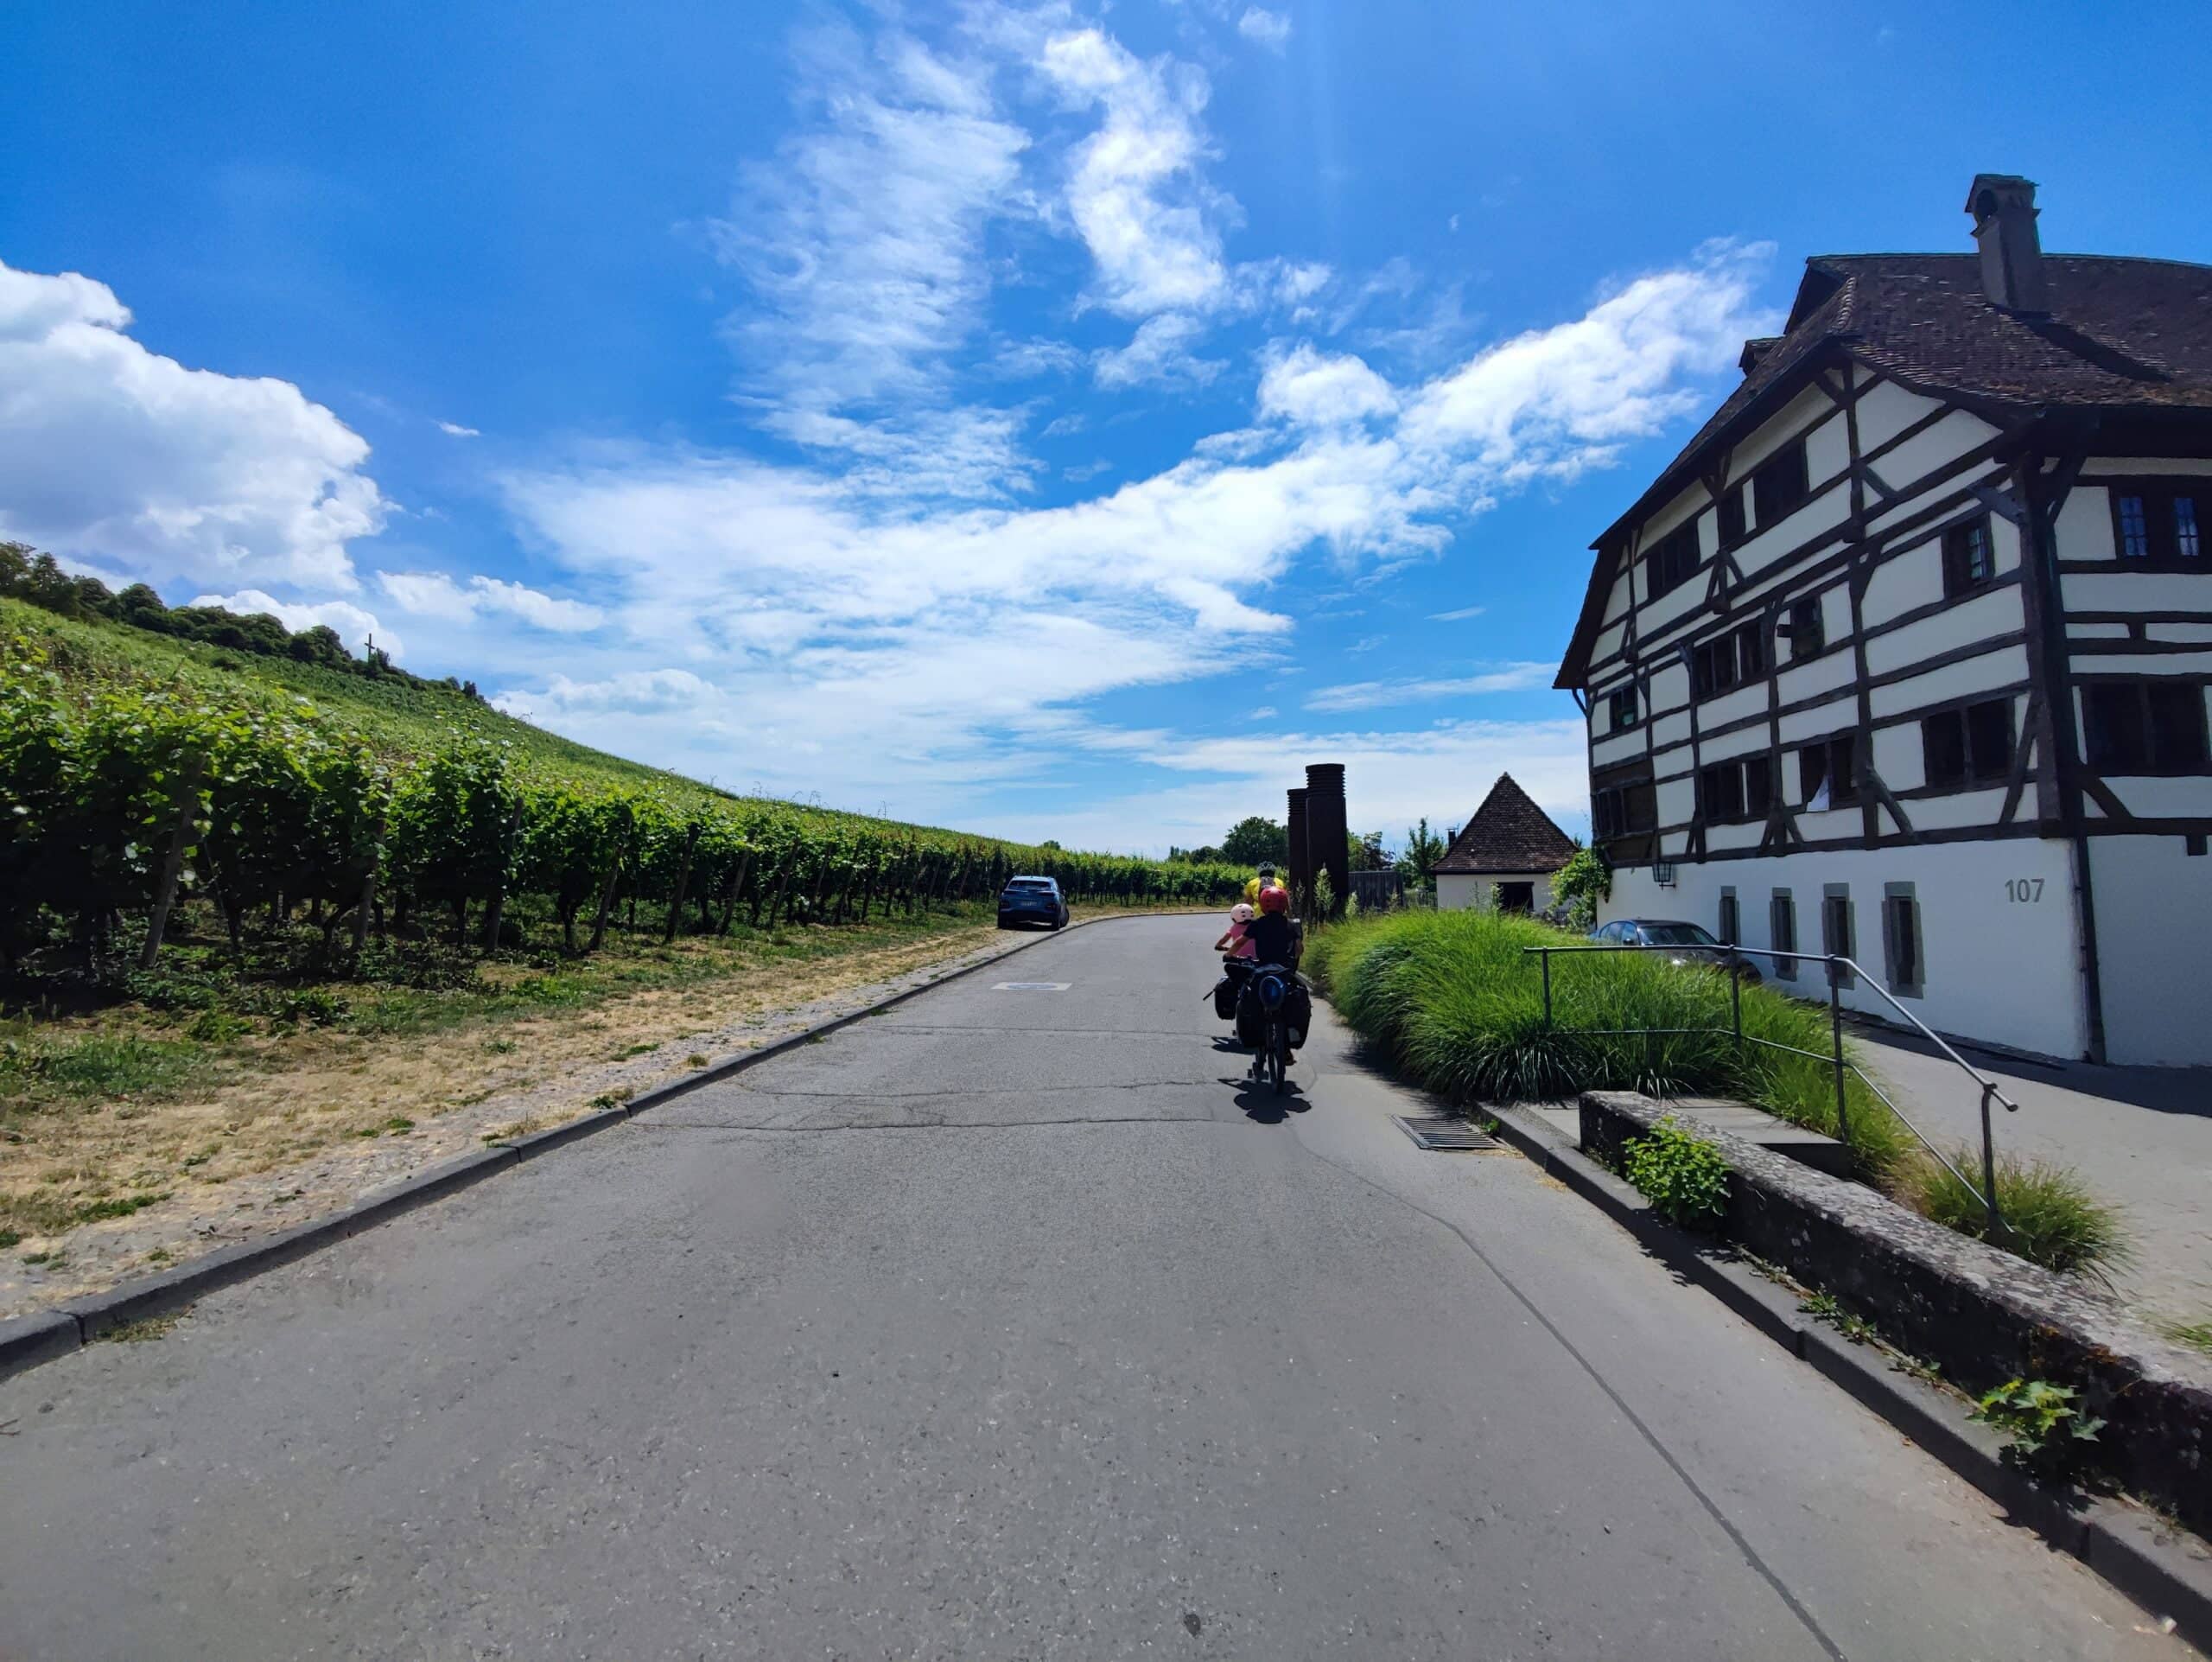 Lesen Sie mehr zum Artikel Etappe 4 Bodensee mit dem Rad: Besuch der mittelalterlichen Stadt der 2 Bodenseeburgen und des überraschenden Zeppelinmuseums